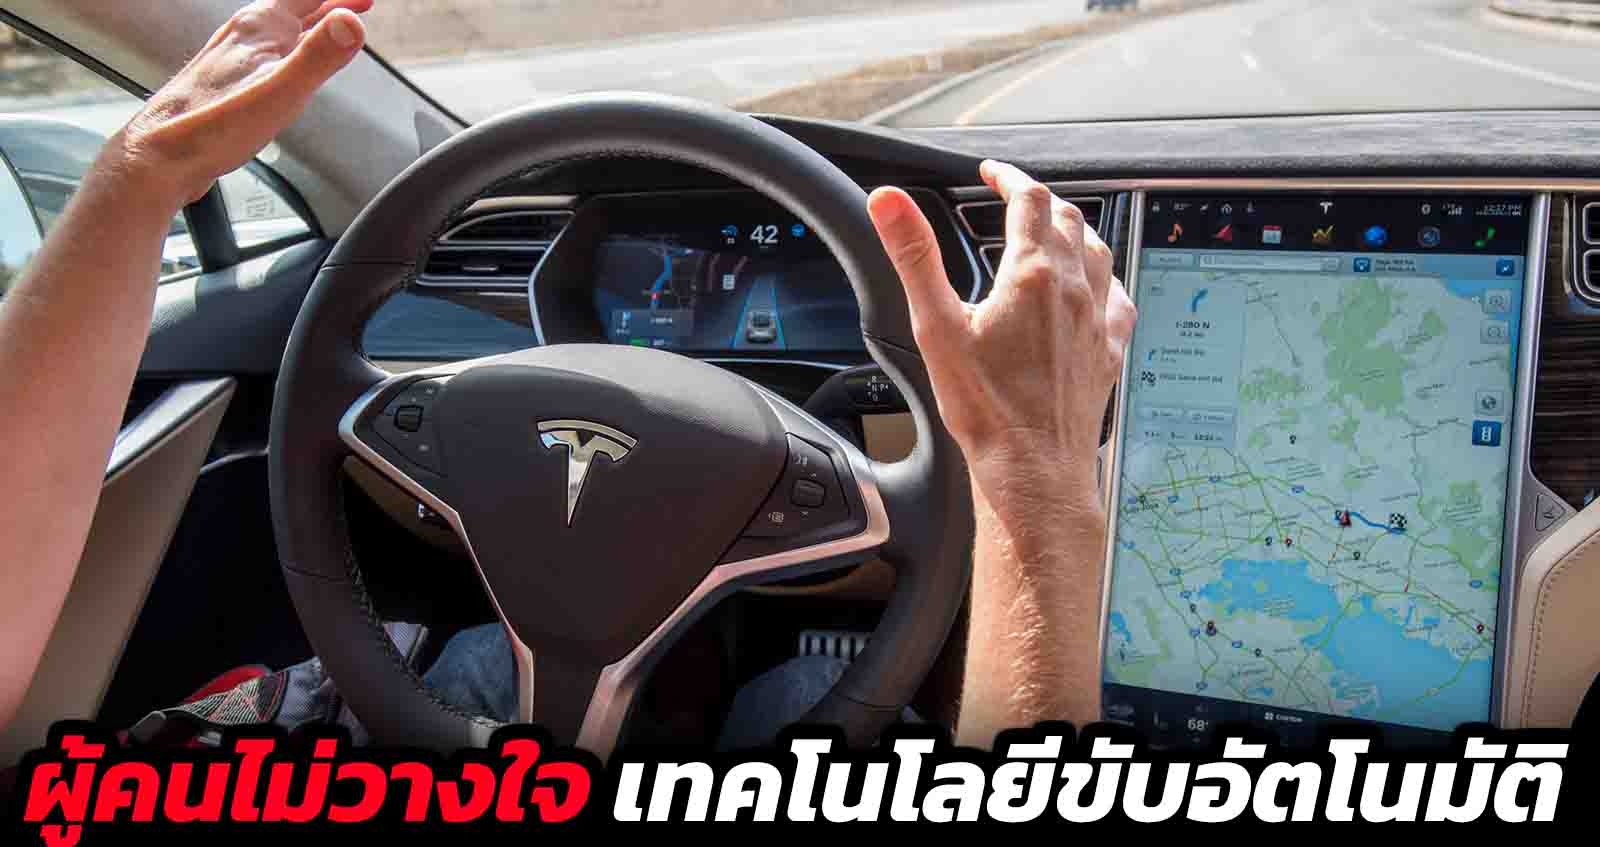 ผู้คนไม่วางใจ เทคโนโลยีขับขี่อัตโนมัติ Self-Driving